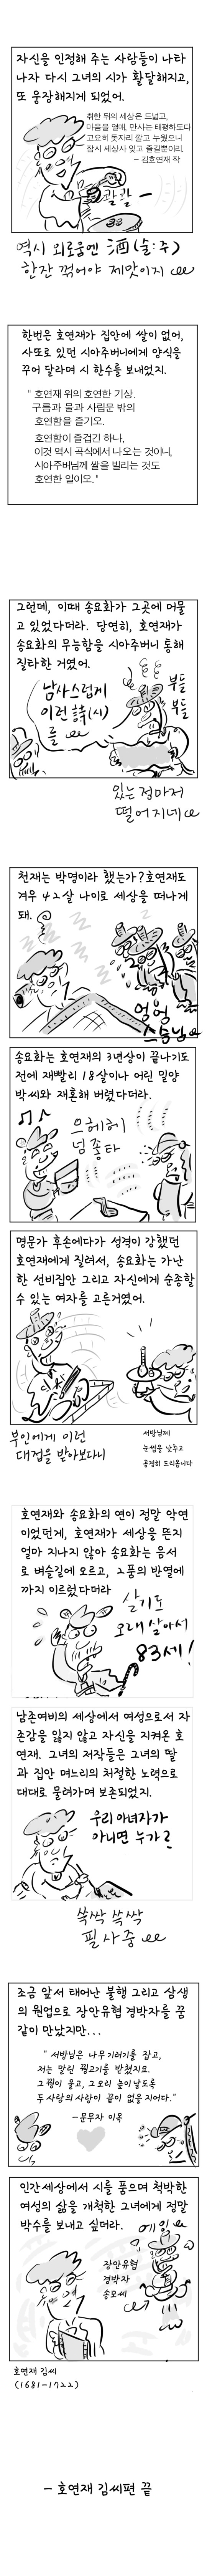 [역사툰] 史(사)람 이야기 3화: 조선 '걸크러쉬' 김호연재

